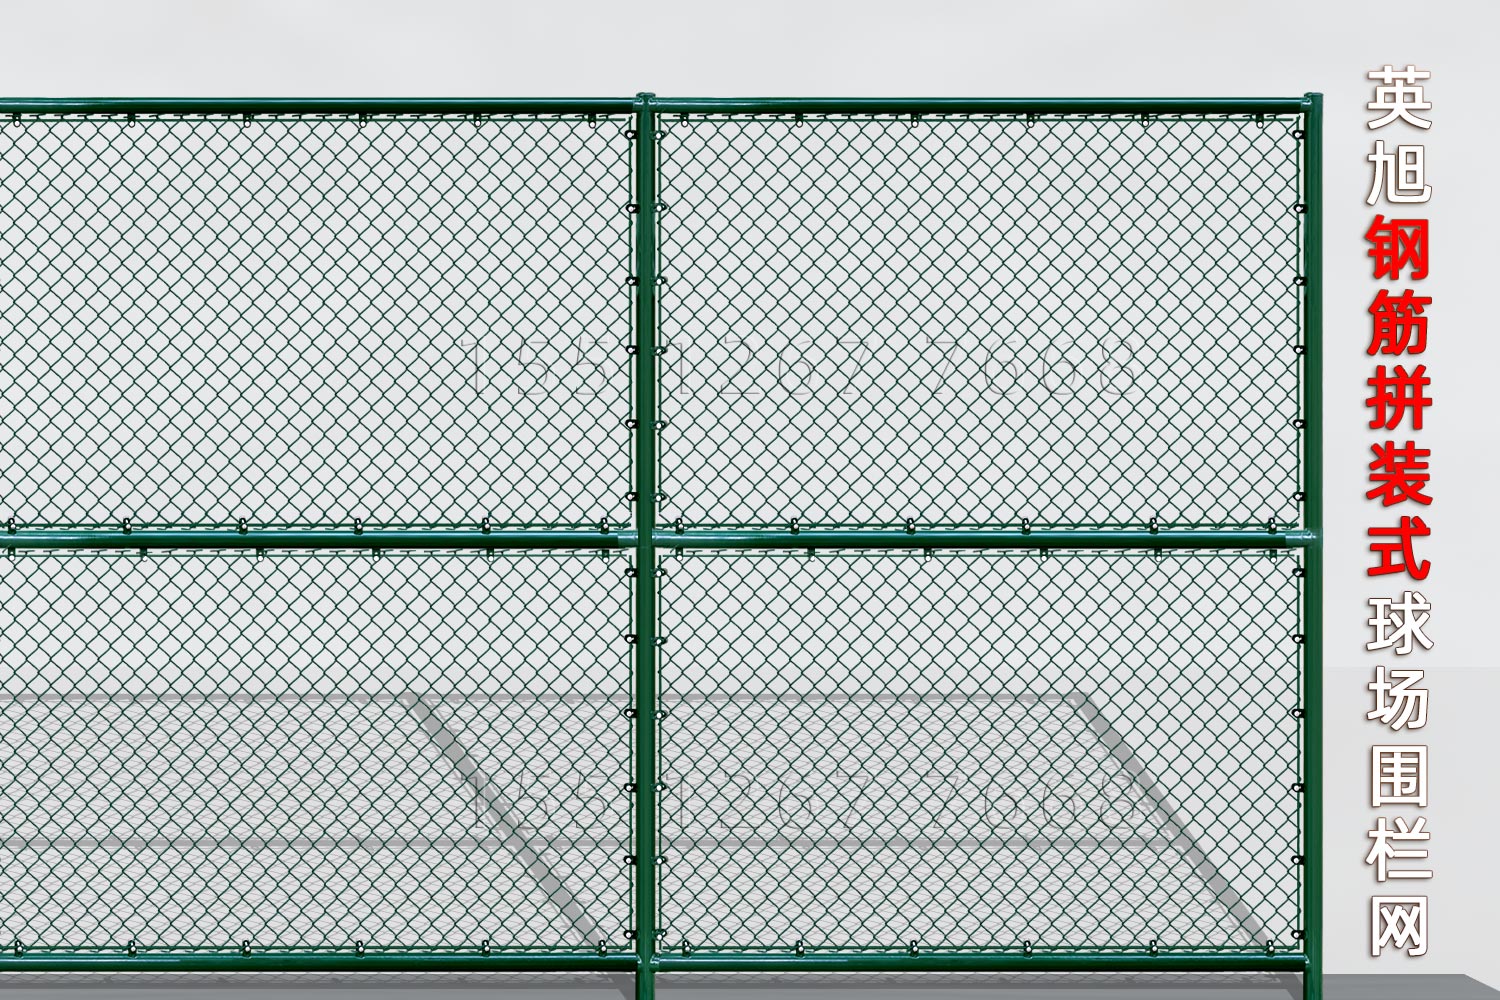 辽宁省钢筋组装式球场围栏网